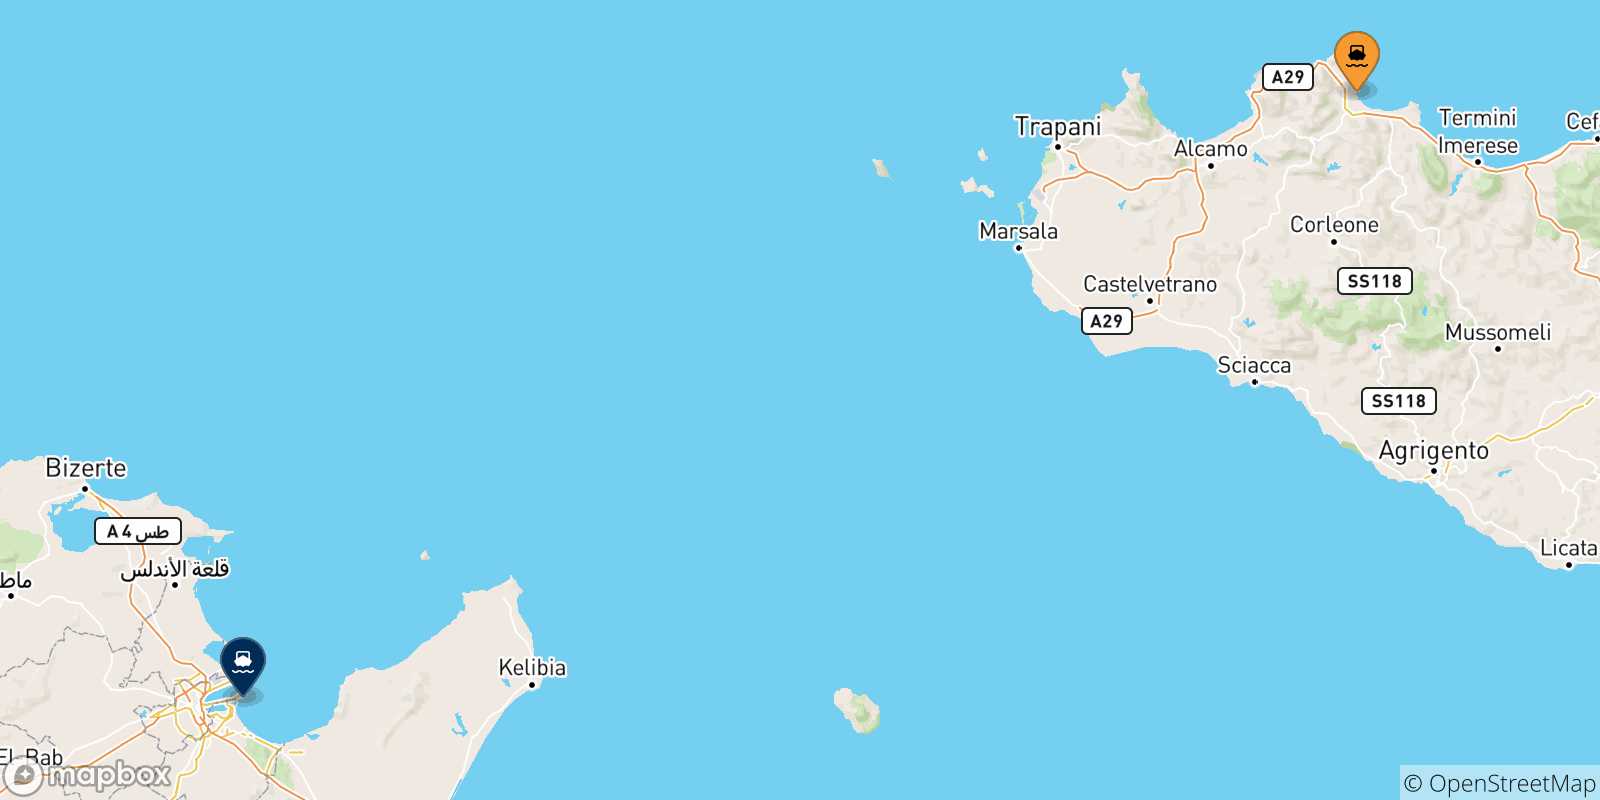 Mappa delle possibili rotte tra la Sicilia e Tunisi